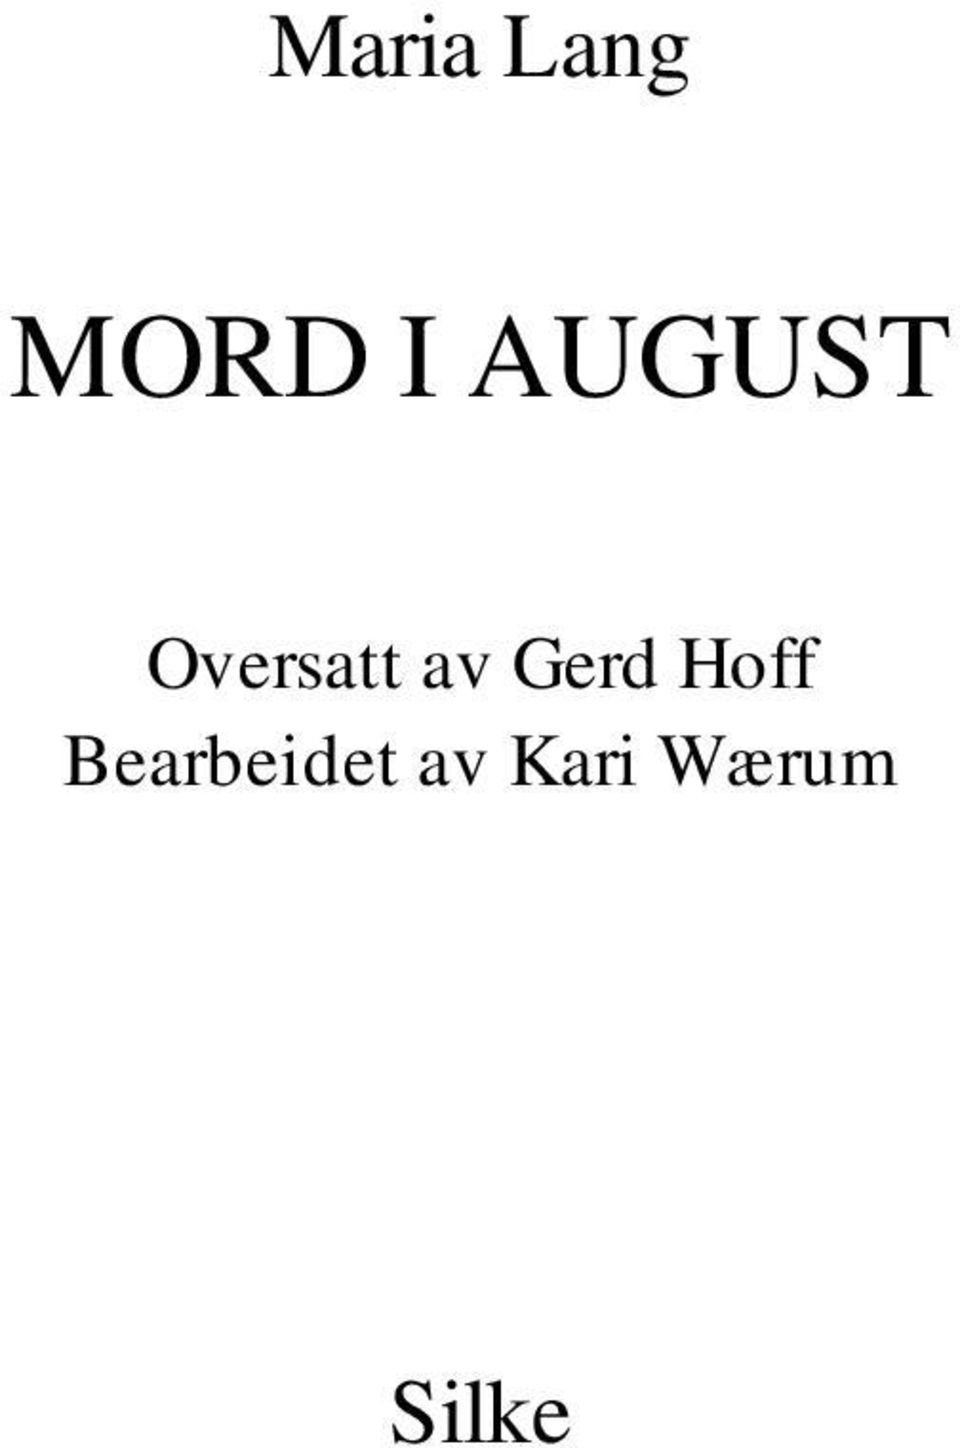 Gerd Hoff